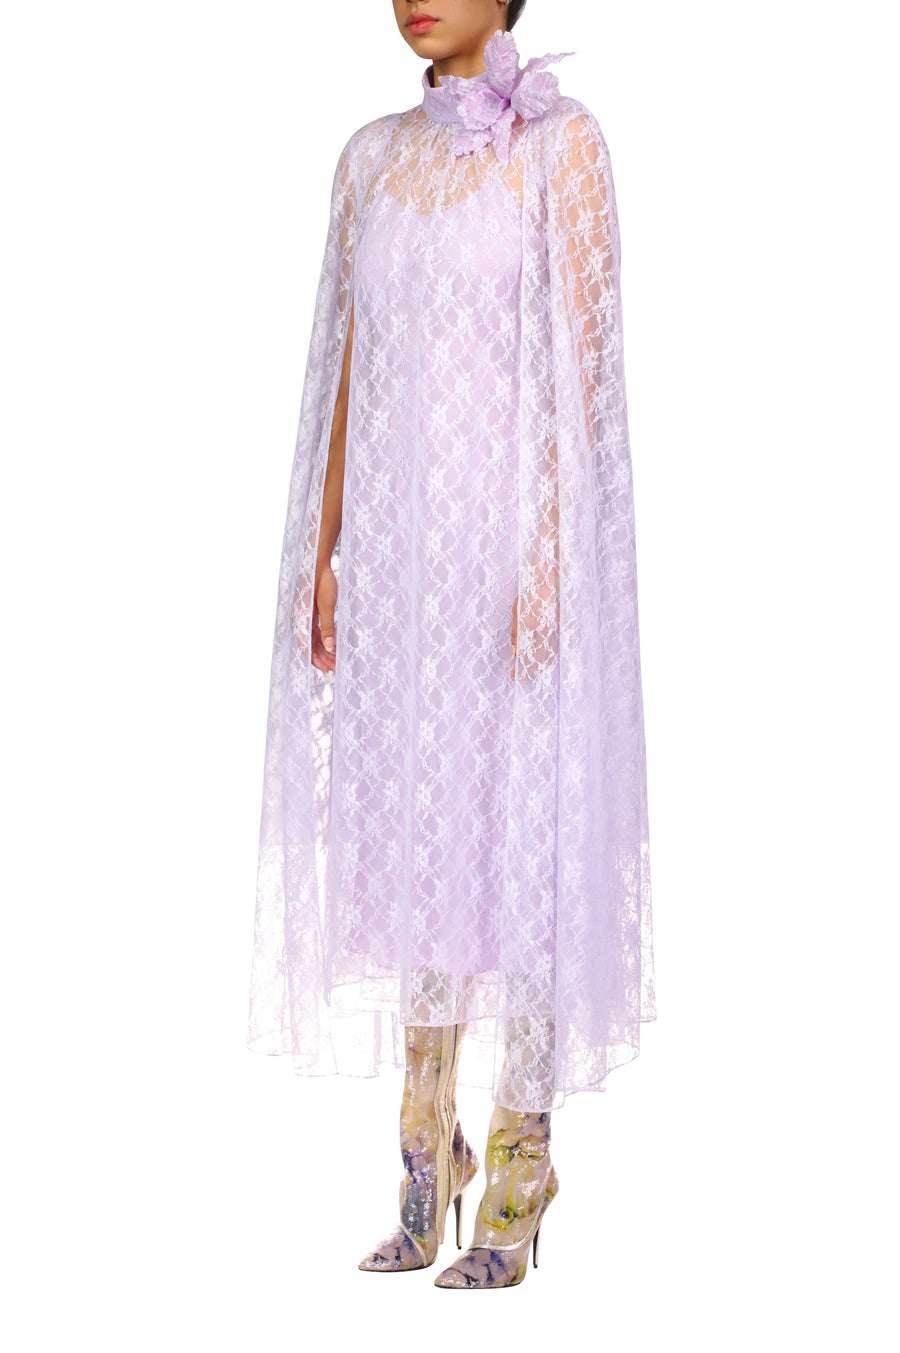 Lavender Floral Lace Cape Dress